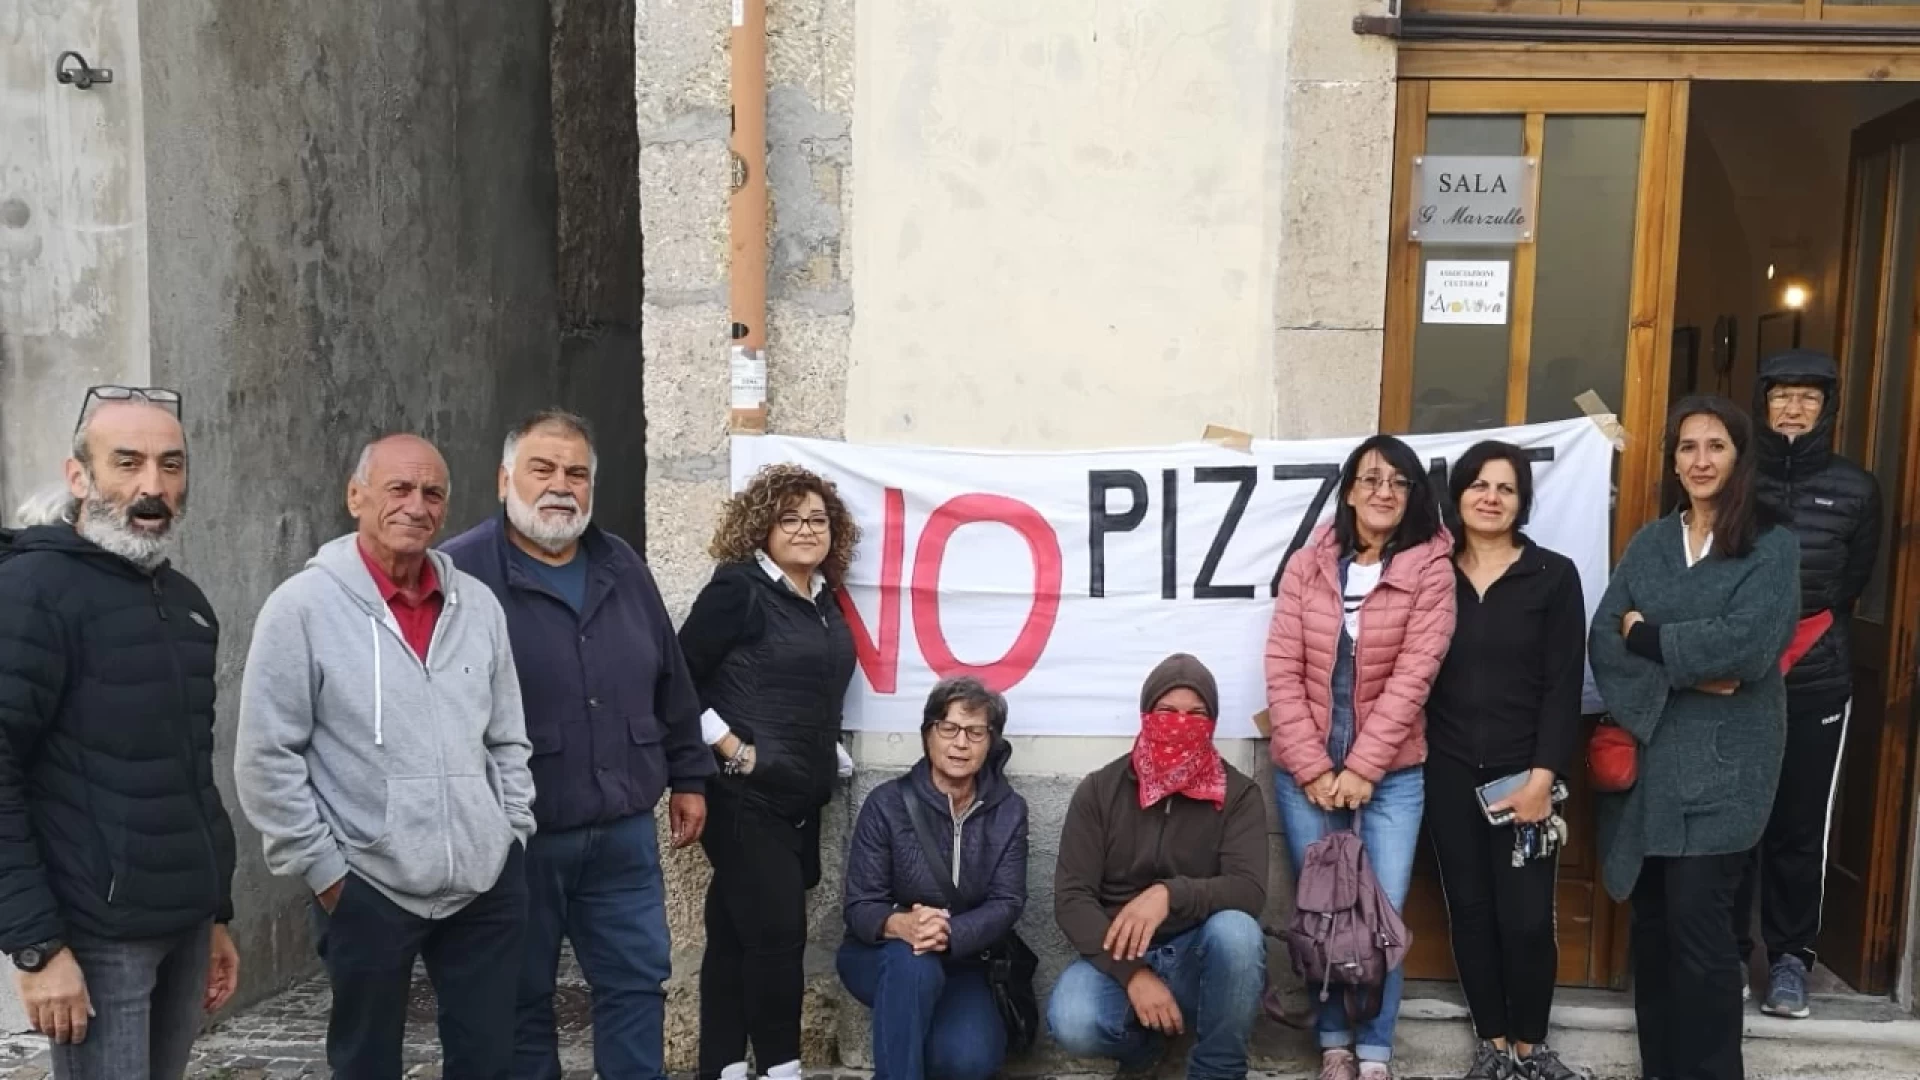 Pizzone II, Enel presenta un nuovo progetto. Martedì 28 novembre incontro con l'amministrazione di Castel San Vincenzo.